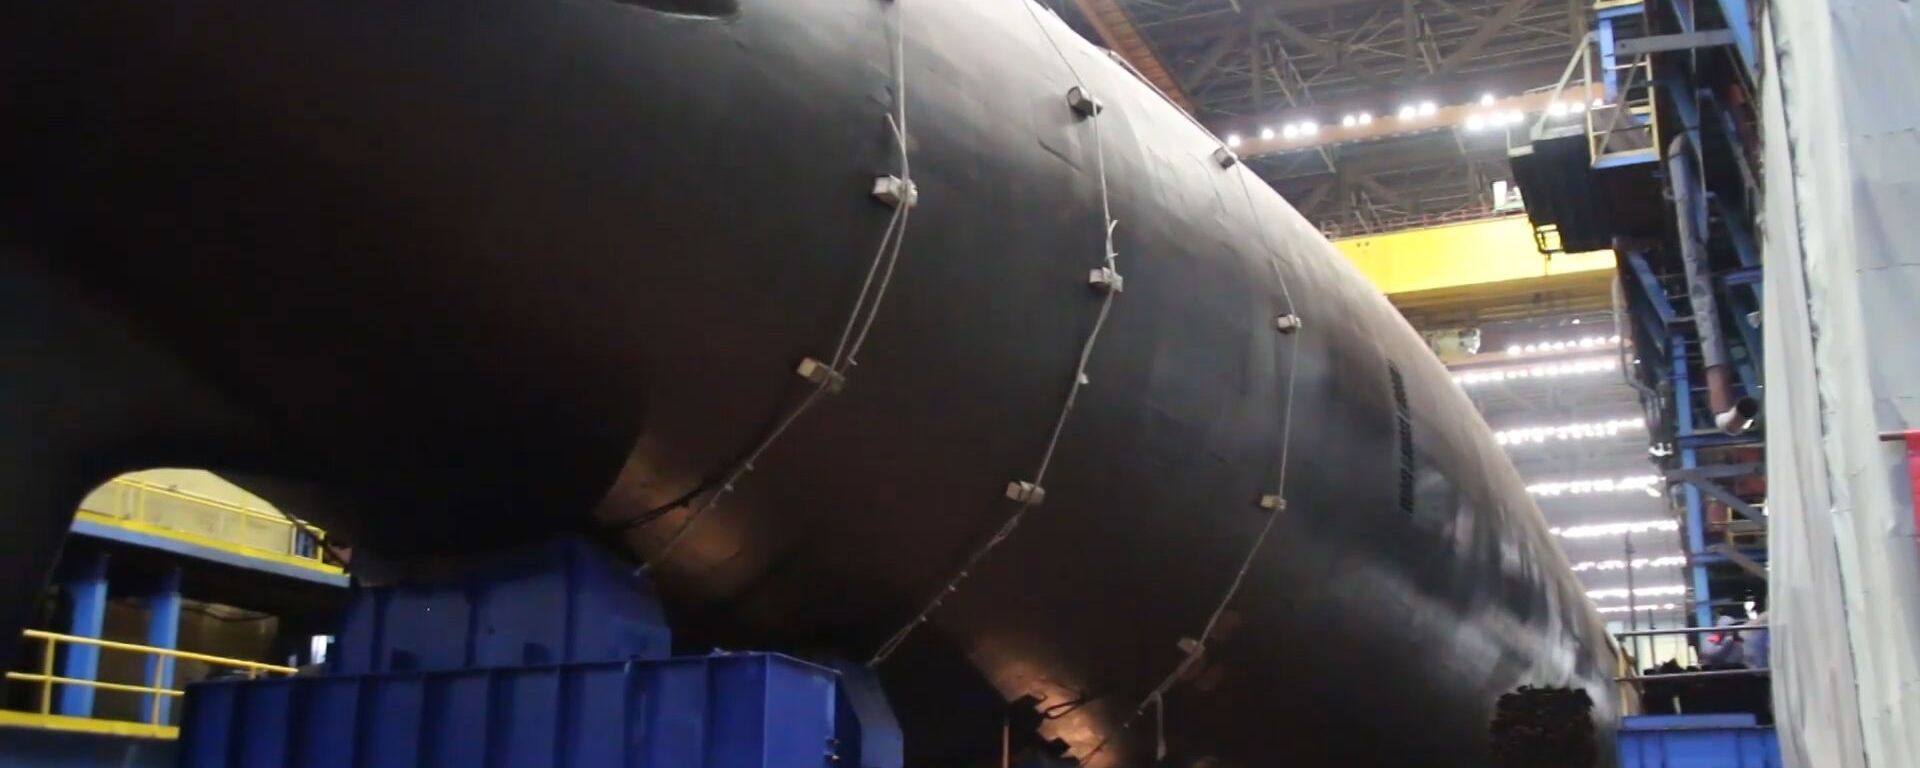 В России показали новейшую атомную подлодку серии “Ясень-М” - Sputnik Lietuva, 1920, 26.12.2019